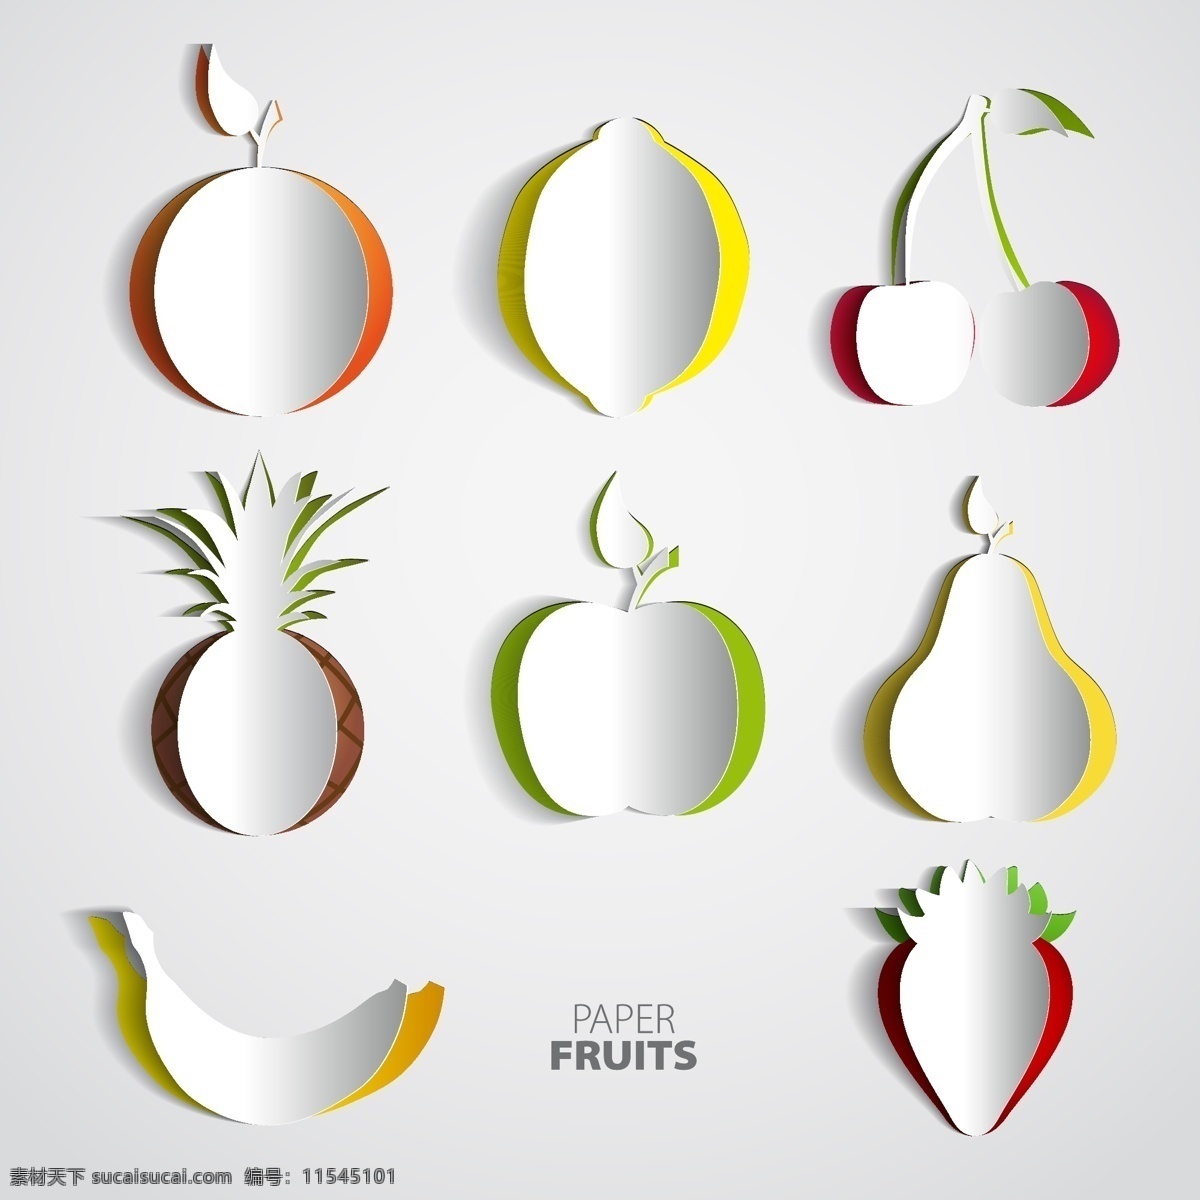 纸 向量 水果 苹果 香蕉 草莓 樱桃 芒果 纸向量设计 水果设计 设计图 生活百科 矢量素材 白色